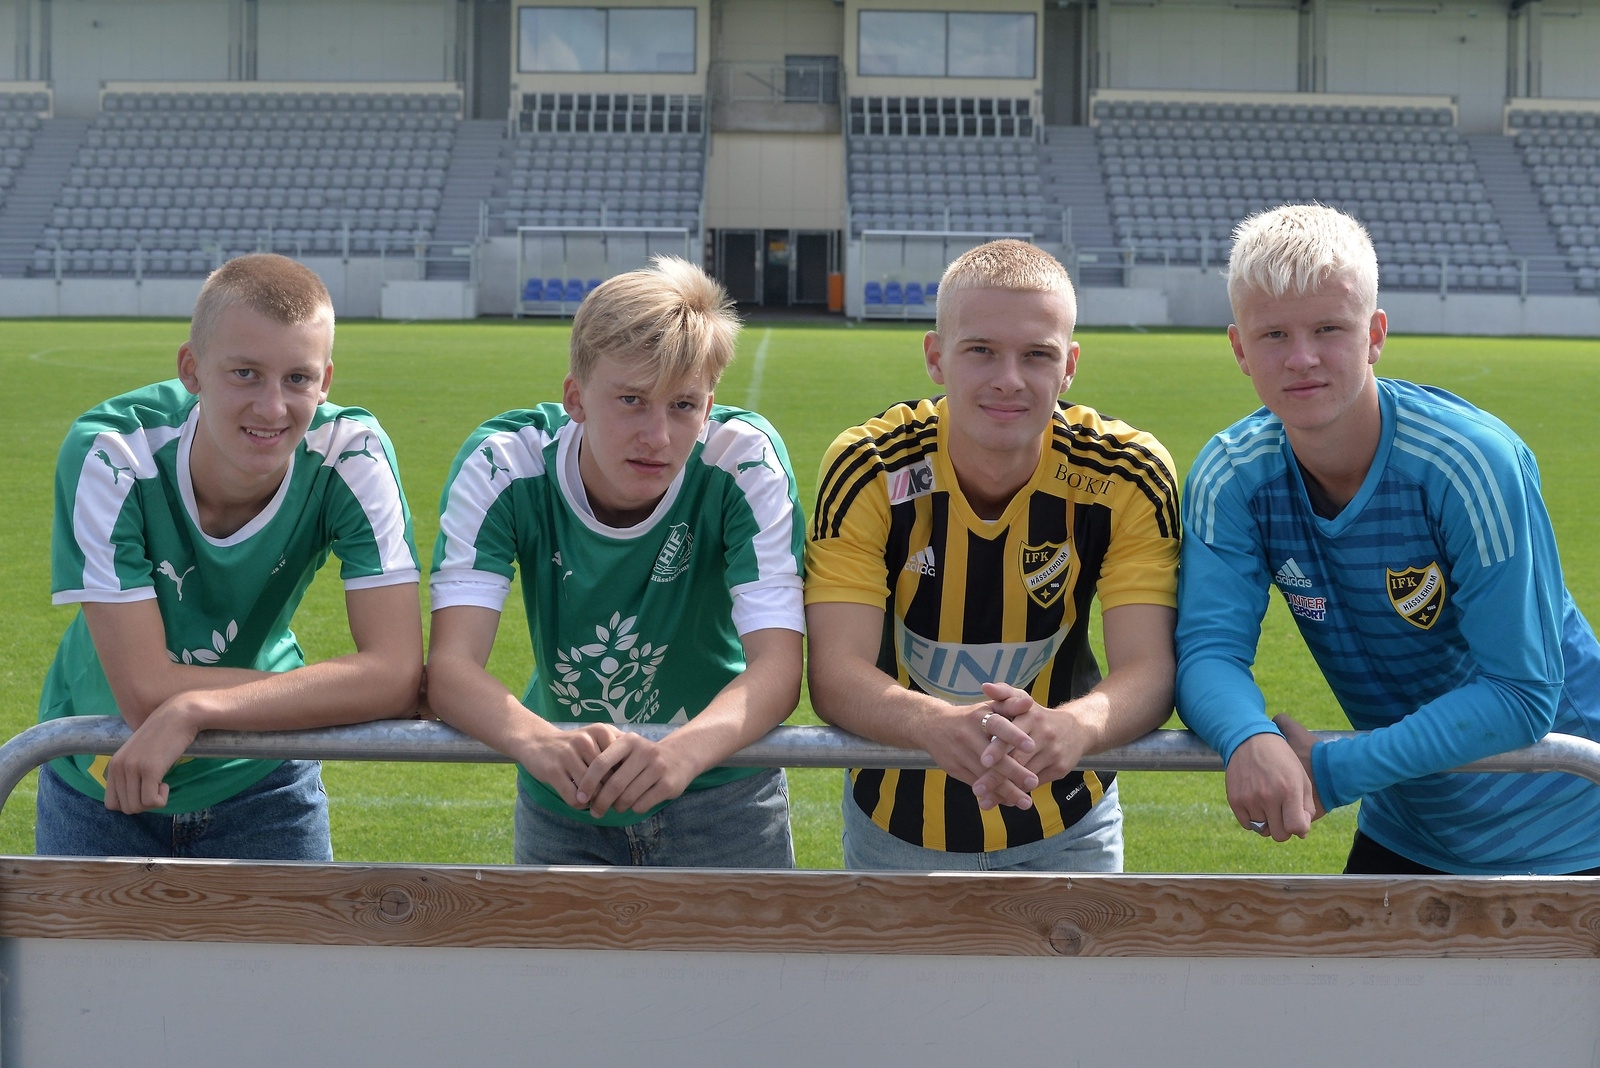 Johan och Vilmer Persson Åhstedt i HIF möter Victor och Jacob Holmberg i IFK i onsdagens DM-derby på Österås.